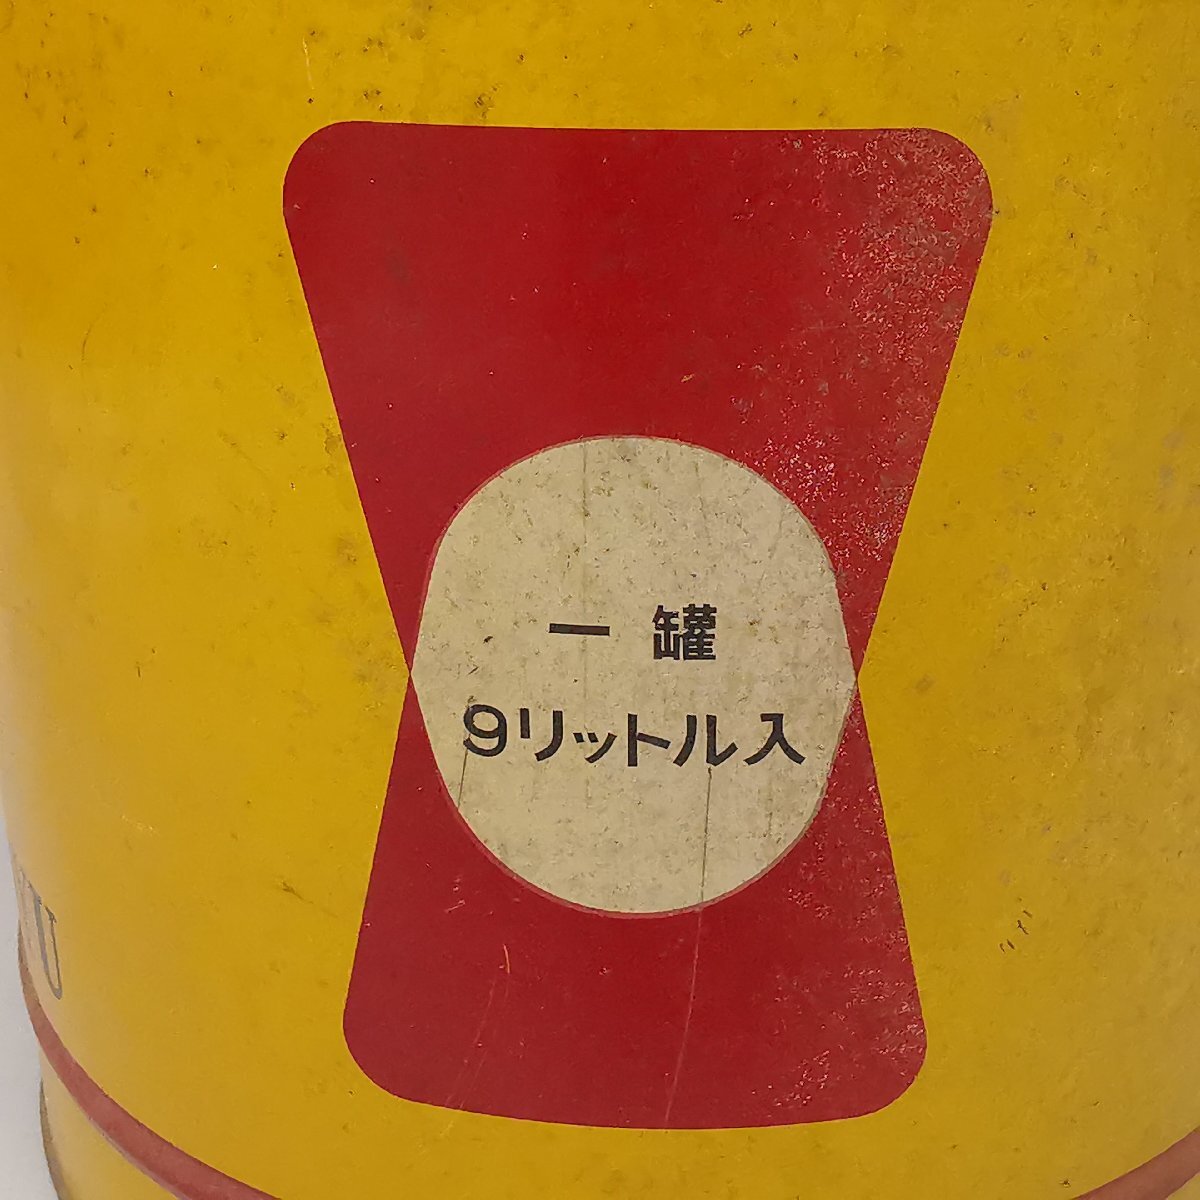 ヤマサ醤油 宮内庁御用達 9リットル入缶 空き缶 9L ブリキ 昭和レトロ ヴィンテージ Z5320